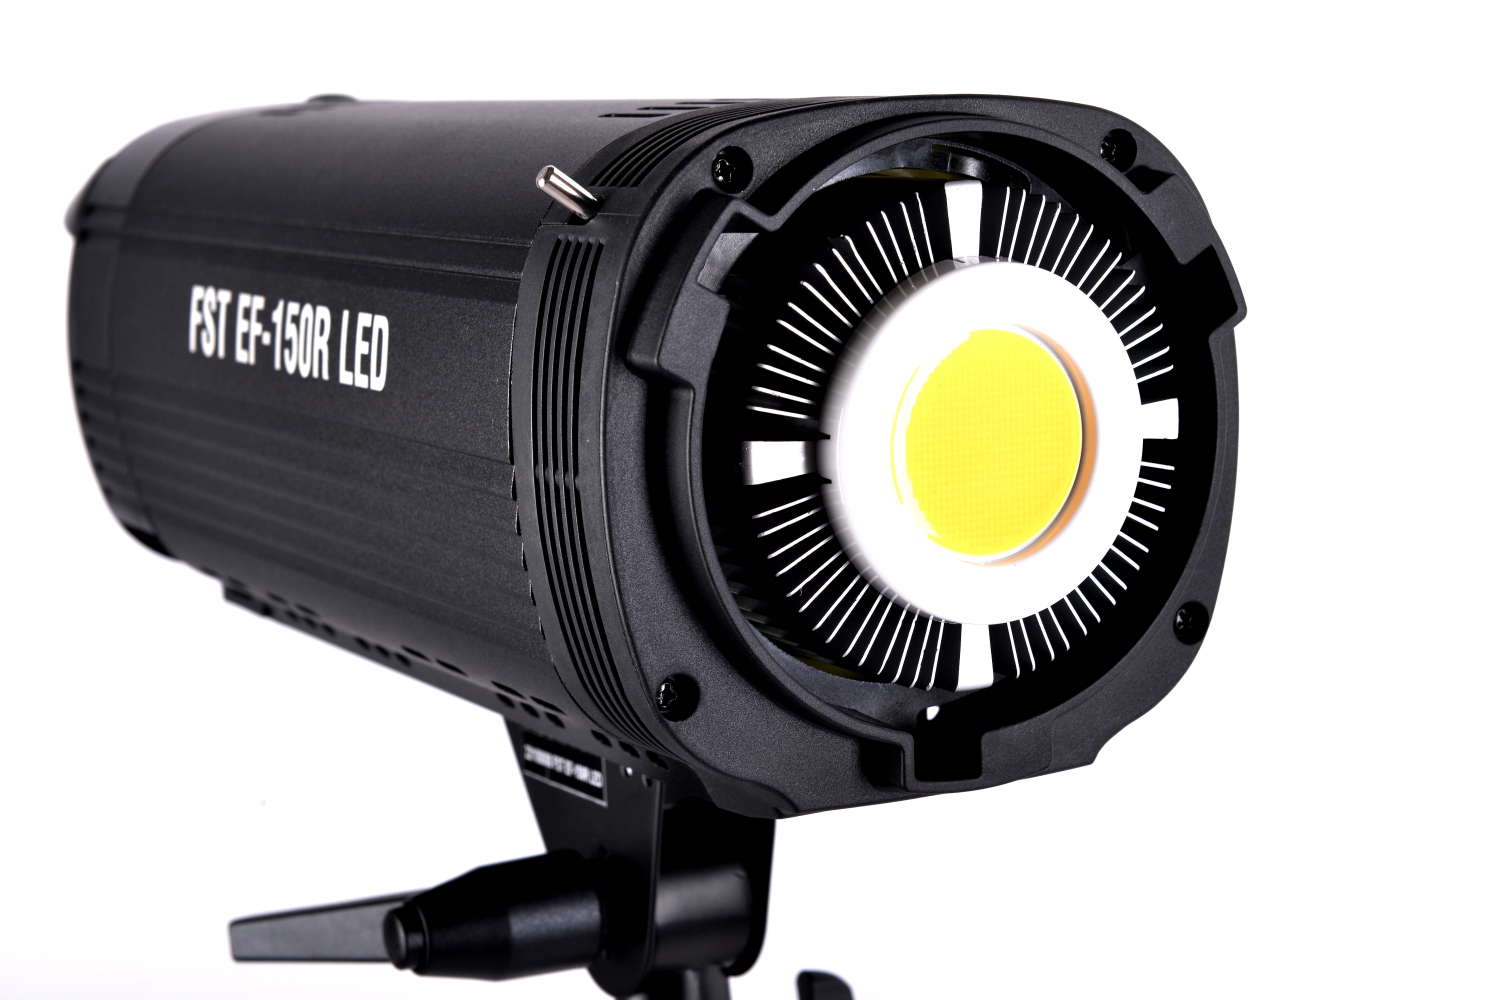 Светодиодный осветитель FST EF-150R